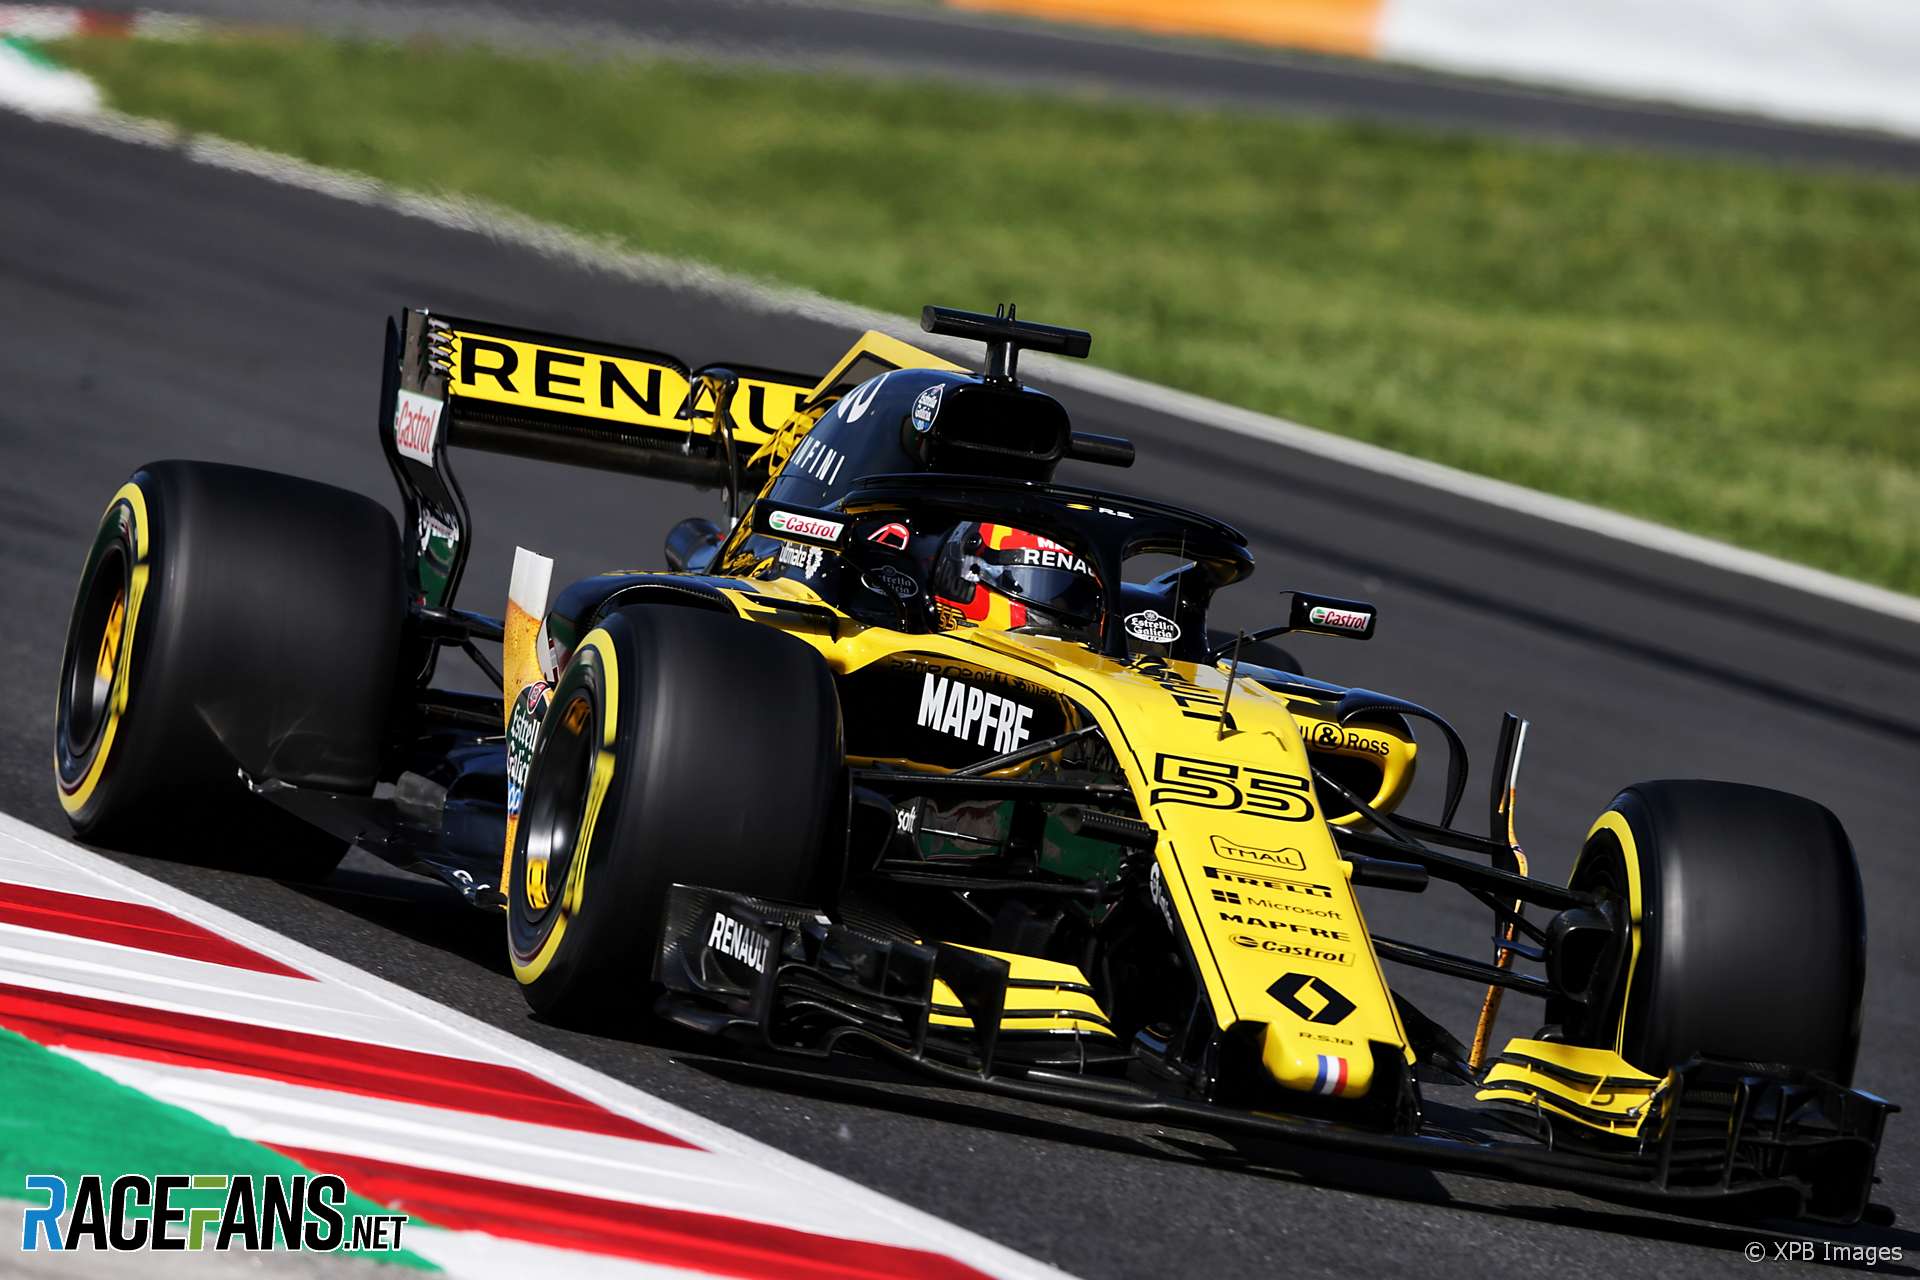 Carlos Sainz Jnr, Renault, Circuit de Catalunya